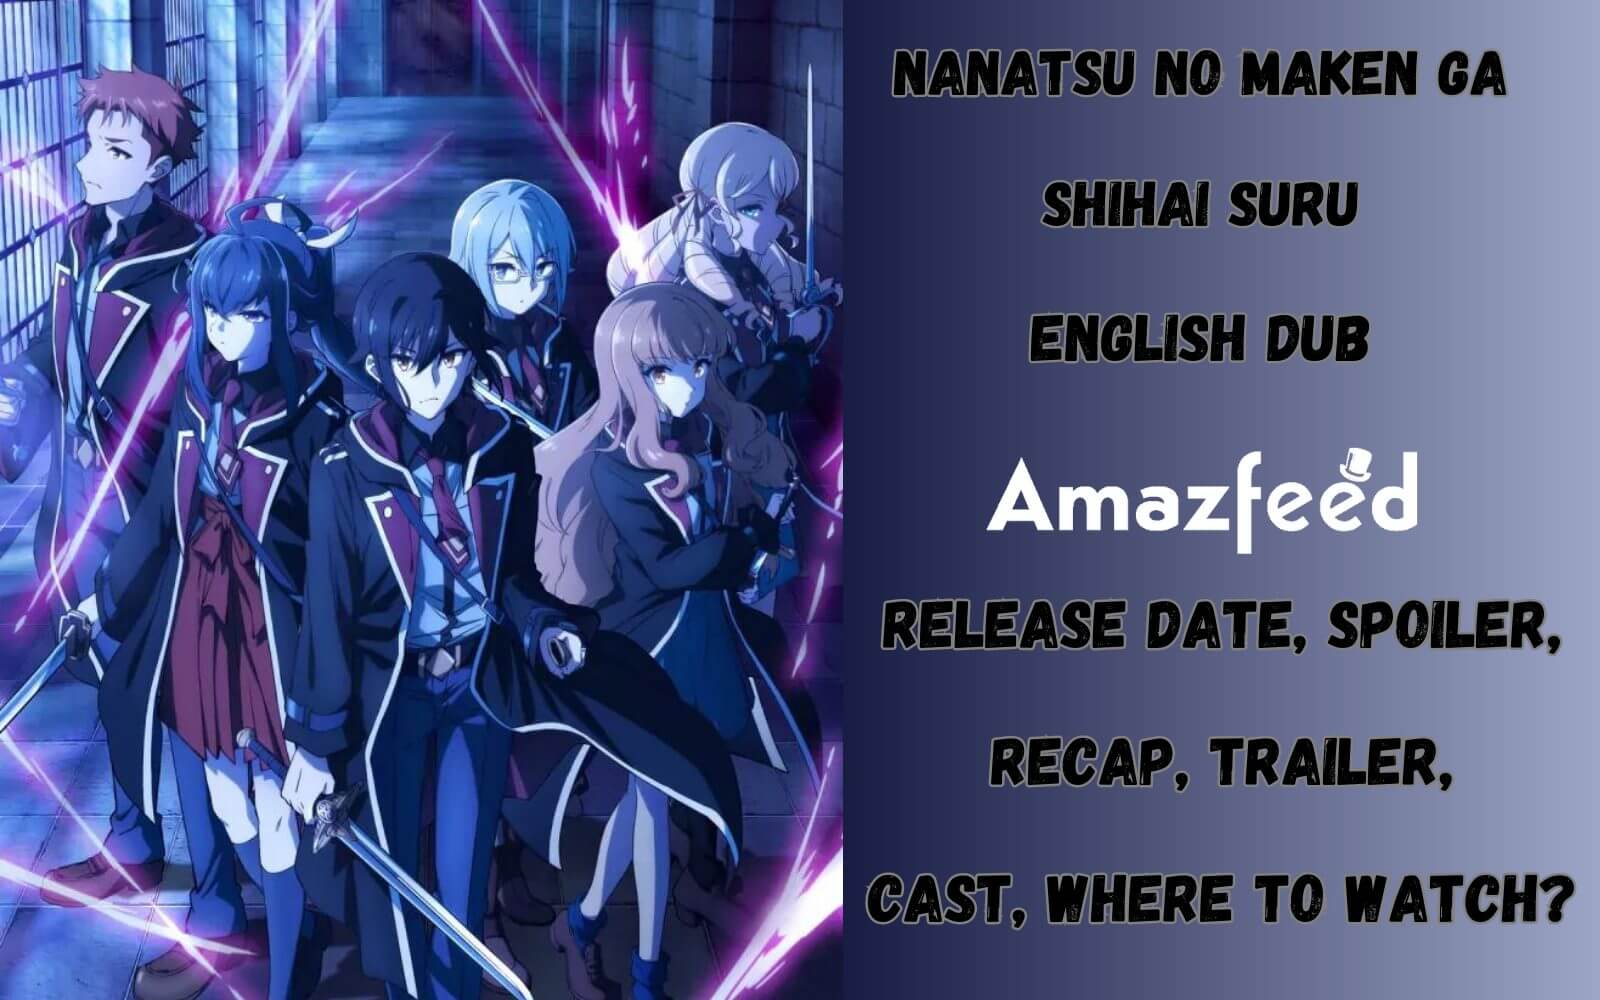 Nanatsu no Maken ga Shihai Suru Season 1 Episode 3 Release Date